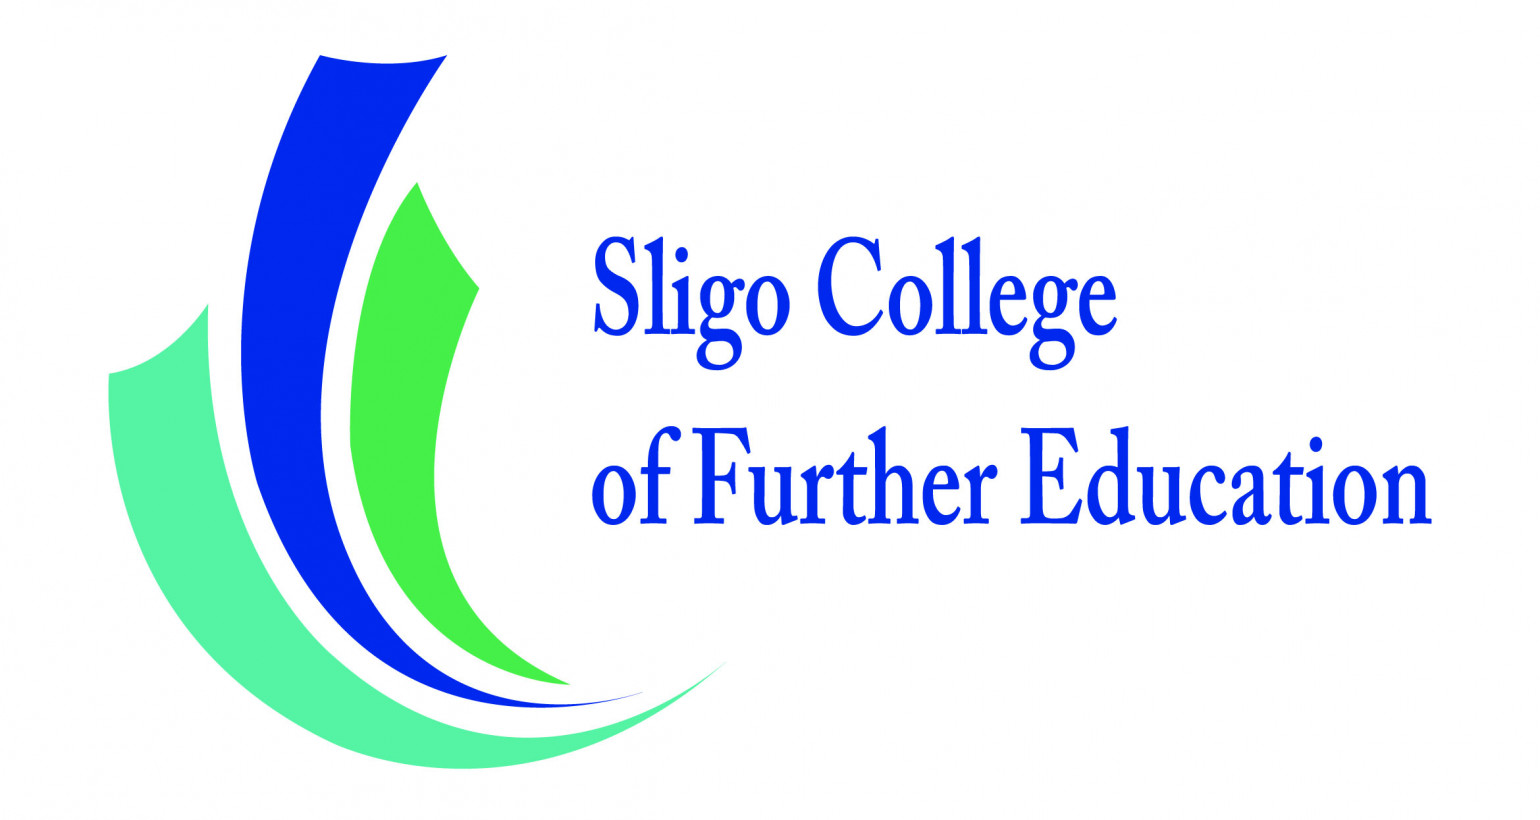 Sligo College of Further Education